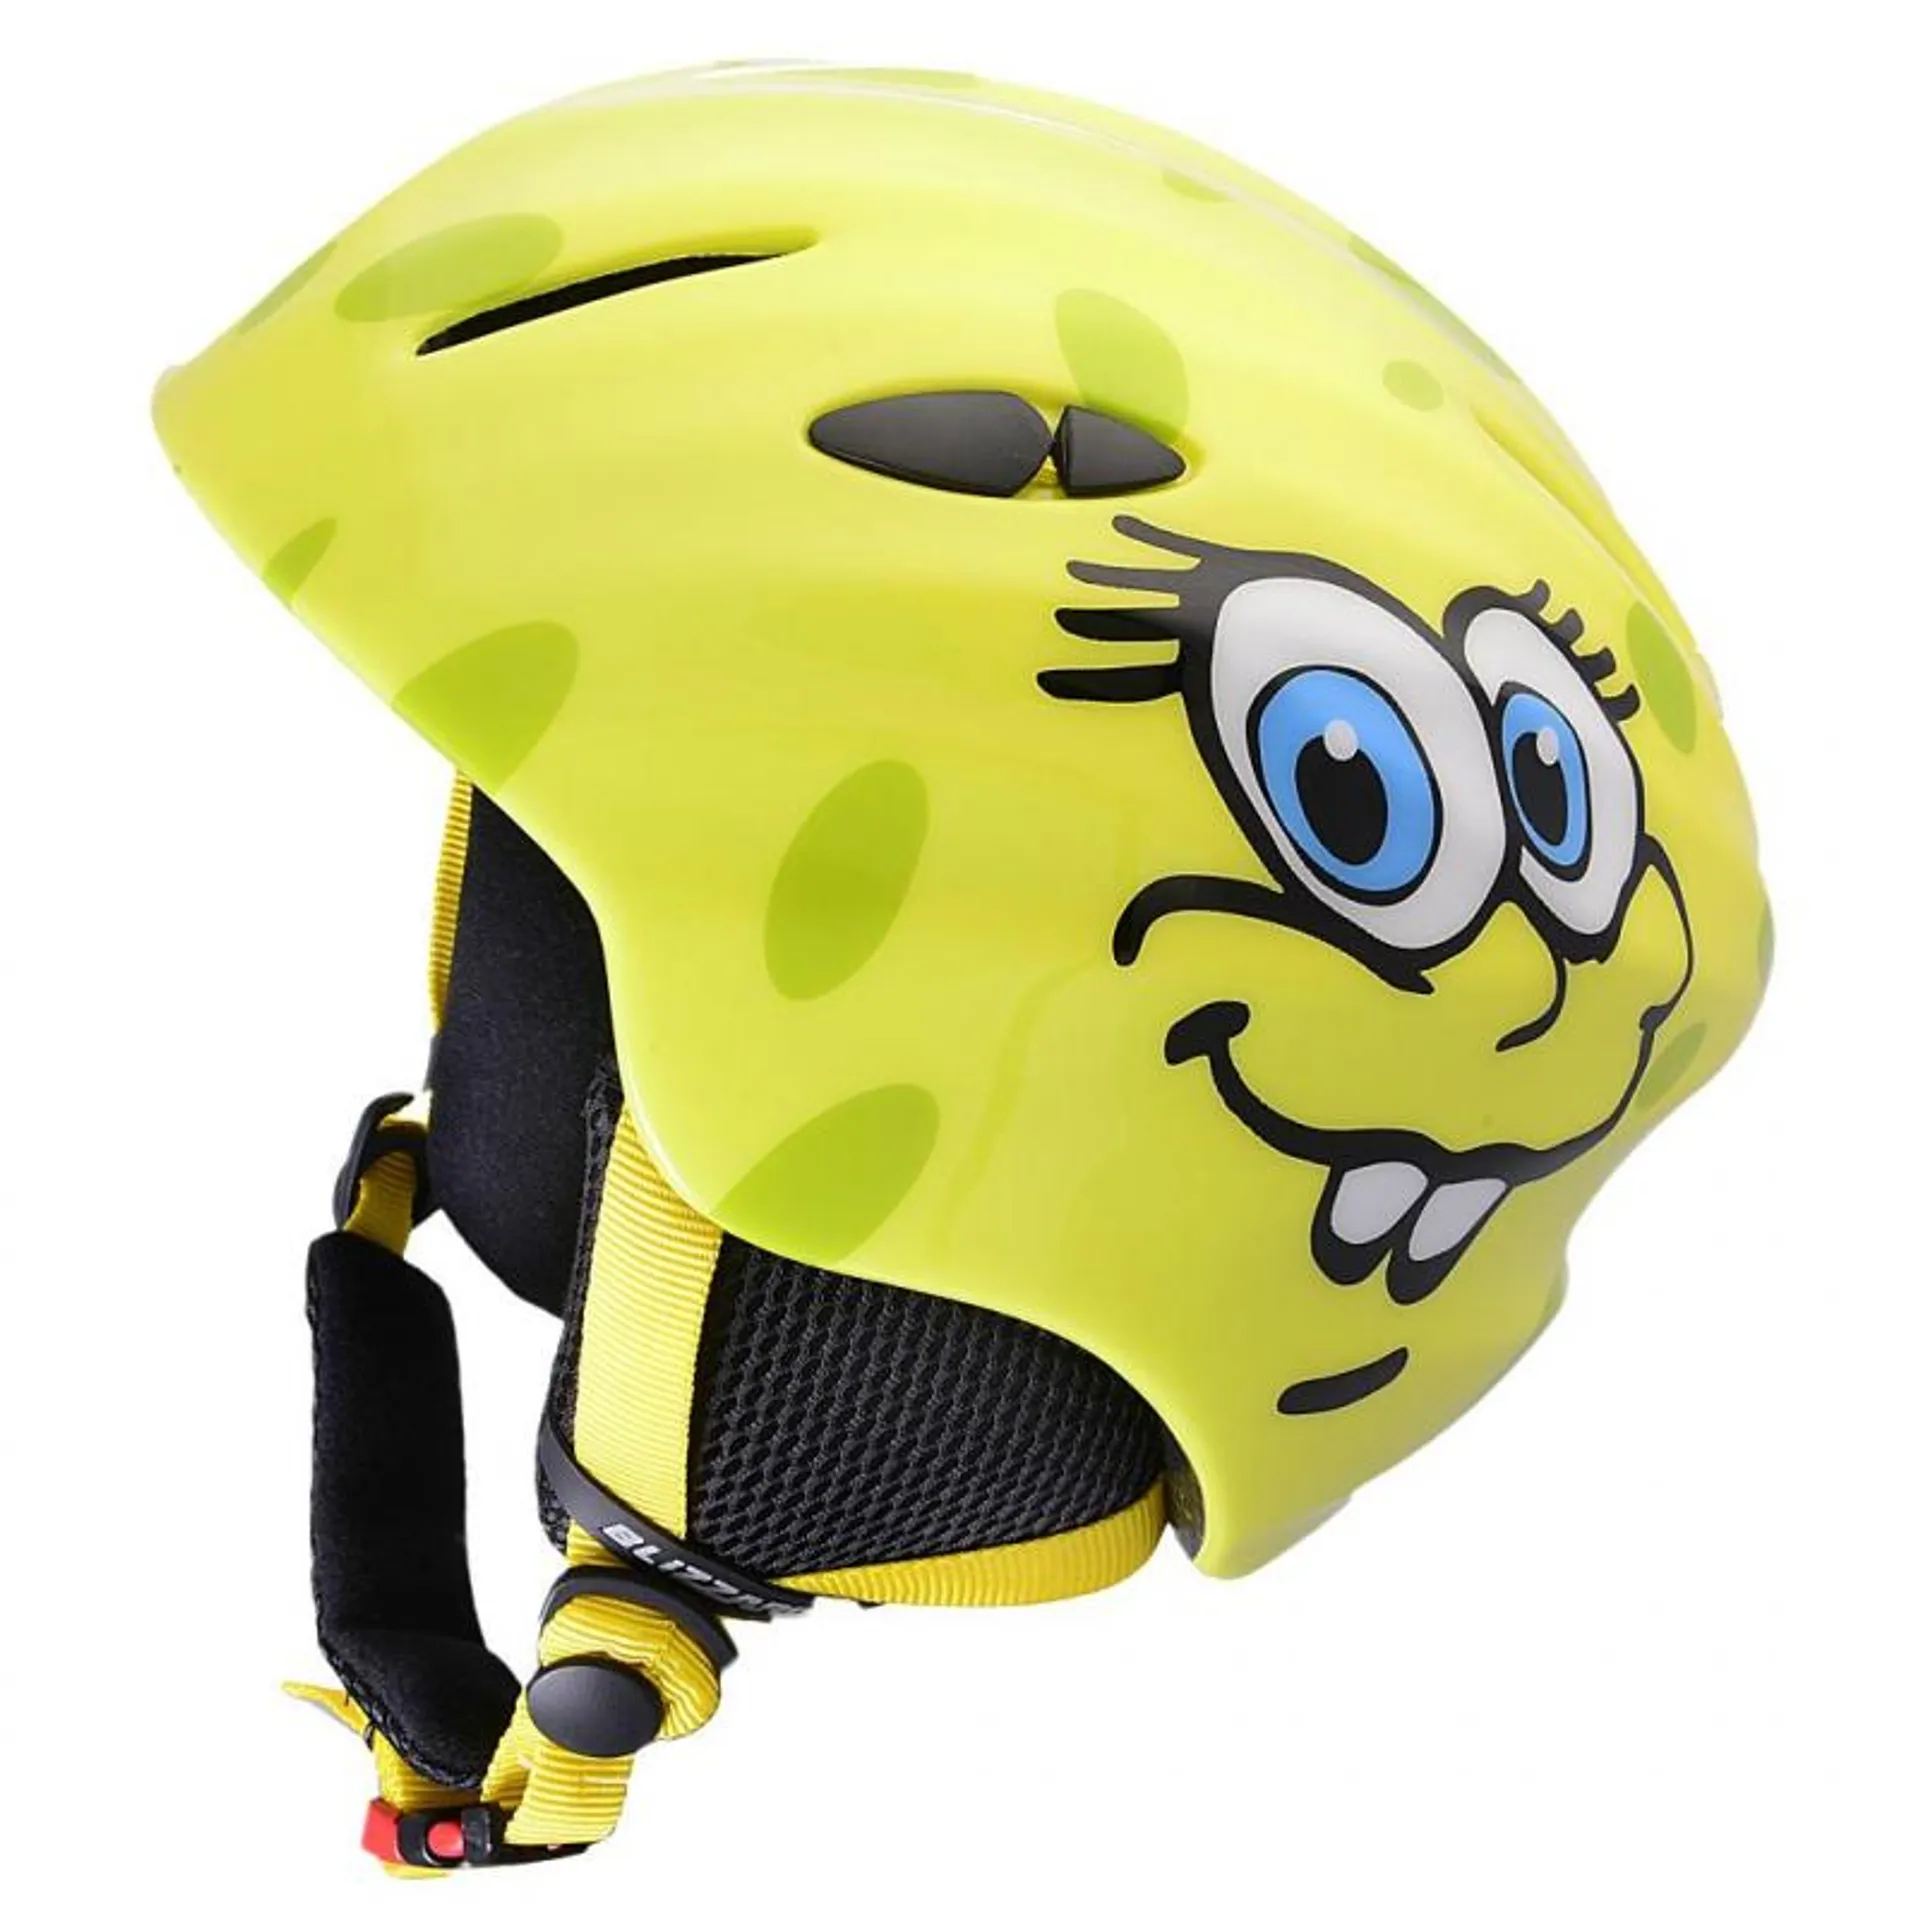 MAGNUM ski helmet, yellow cheese shiny